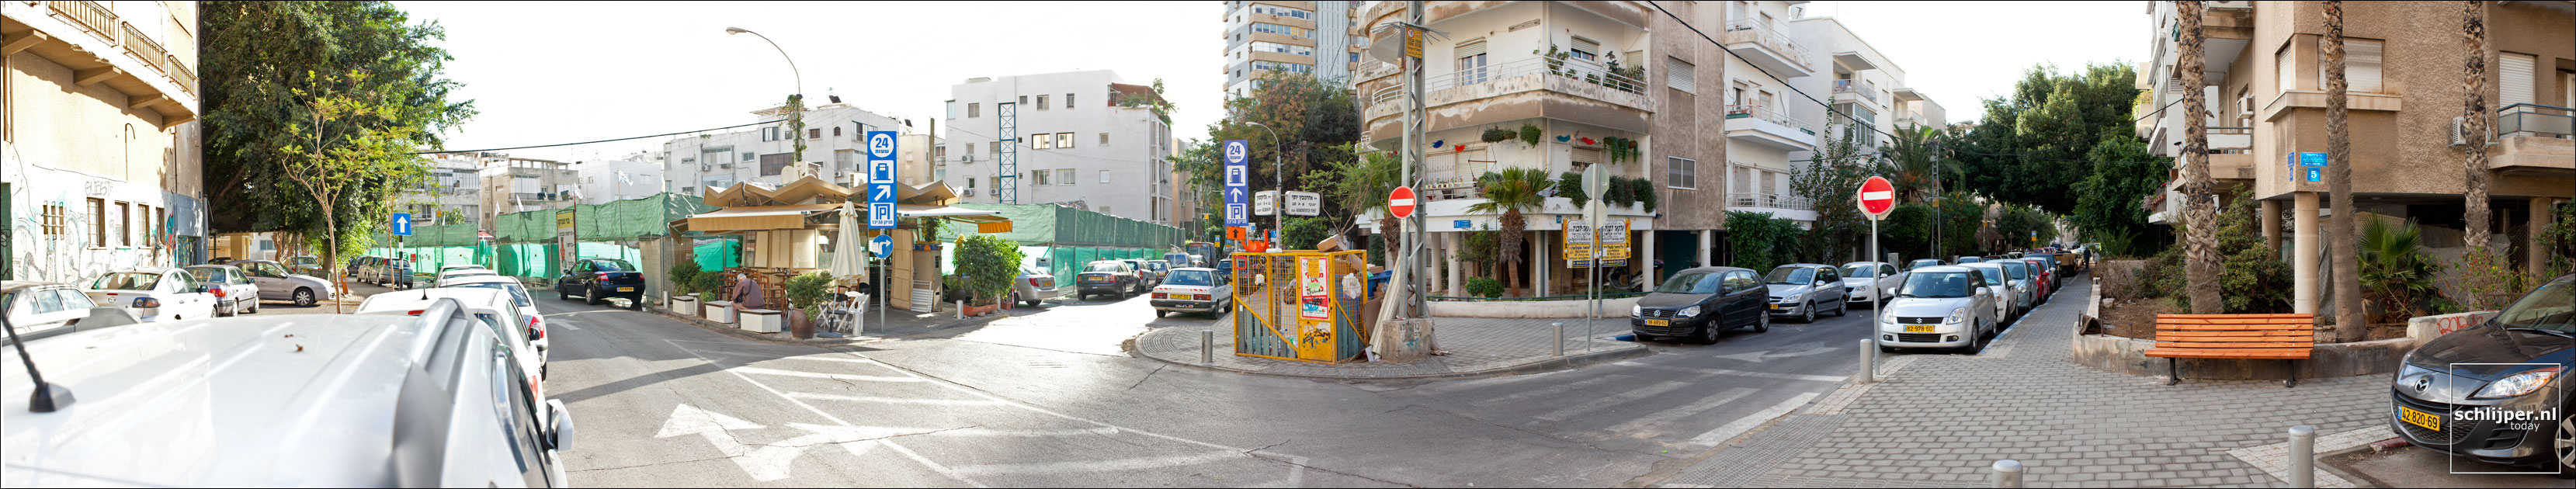 Israel, Tel Aviv, 6 december 2010